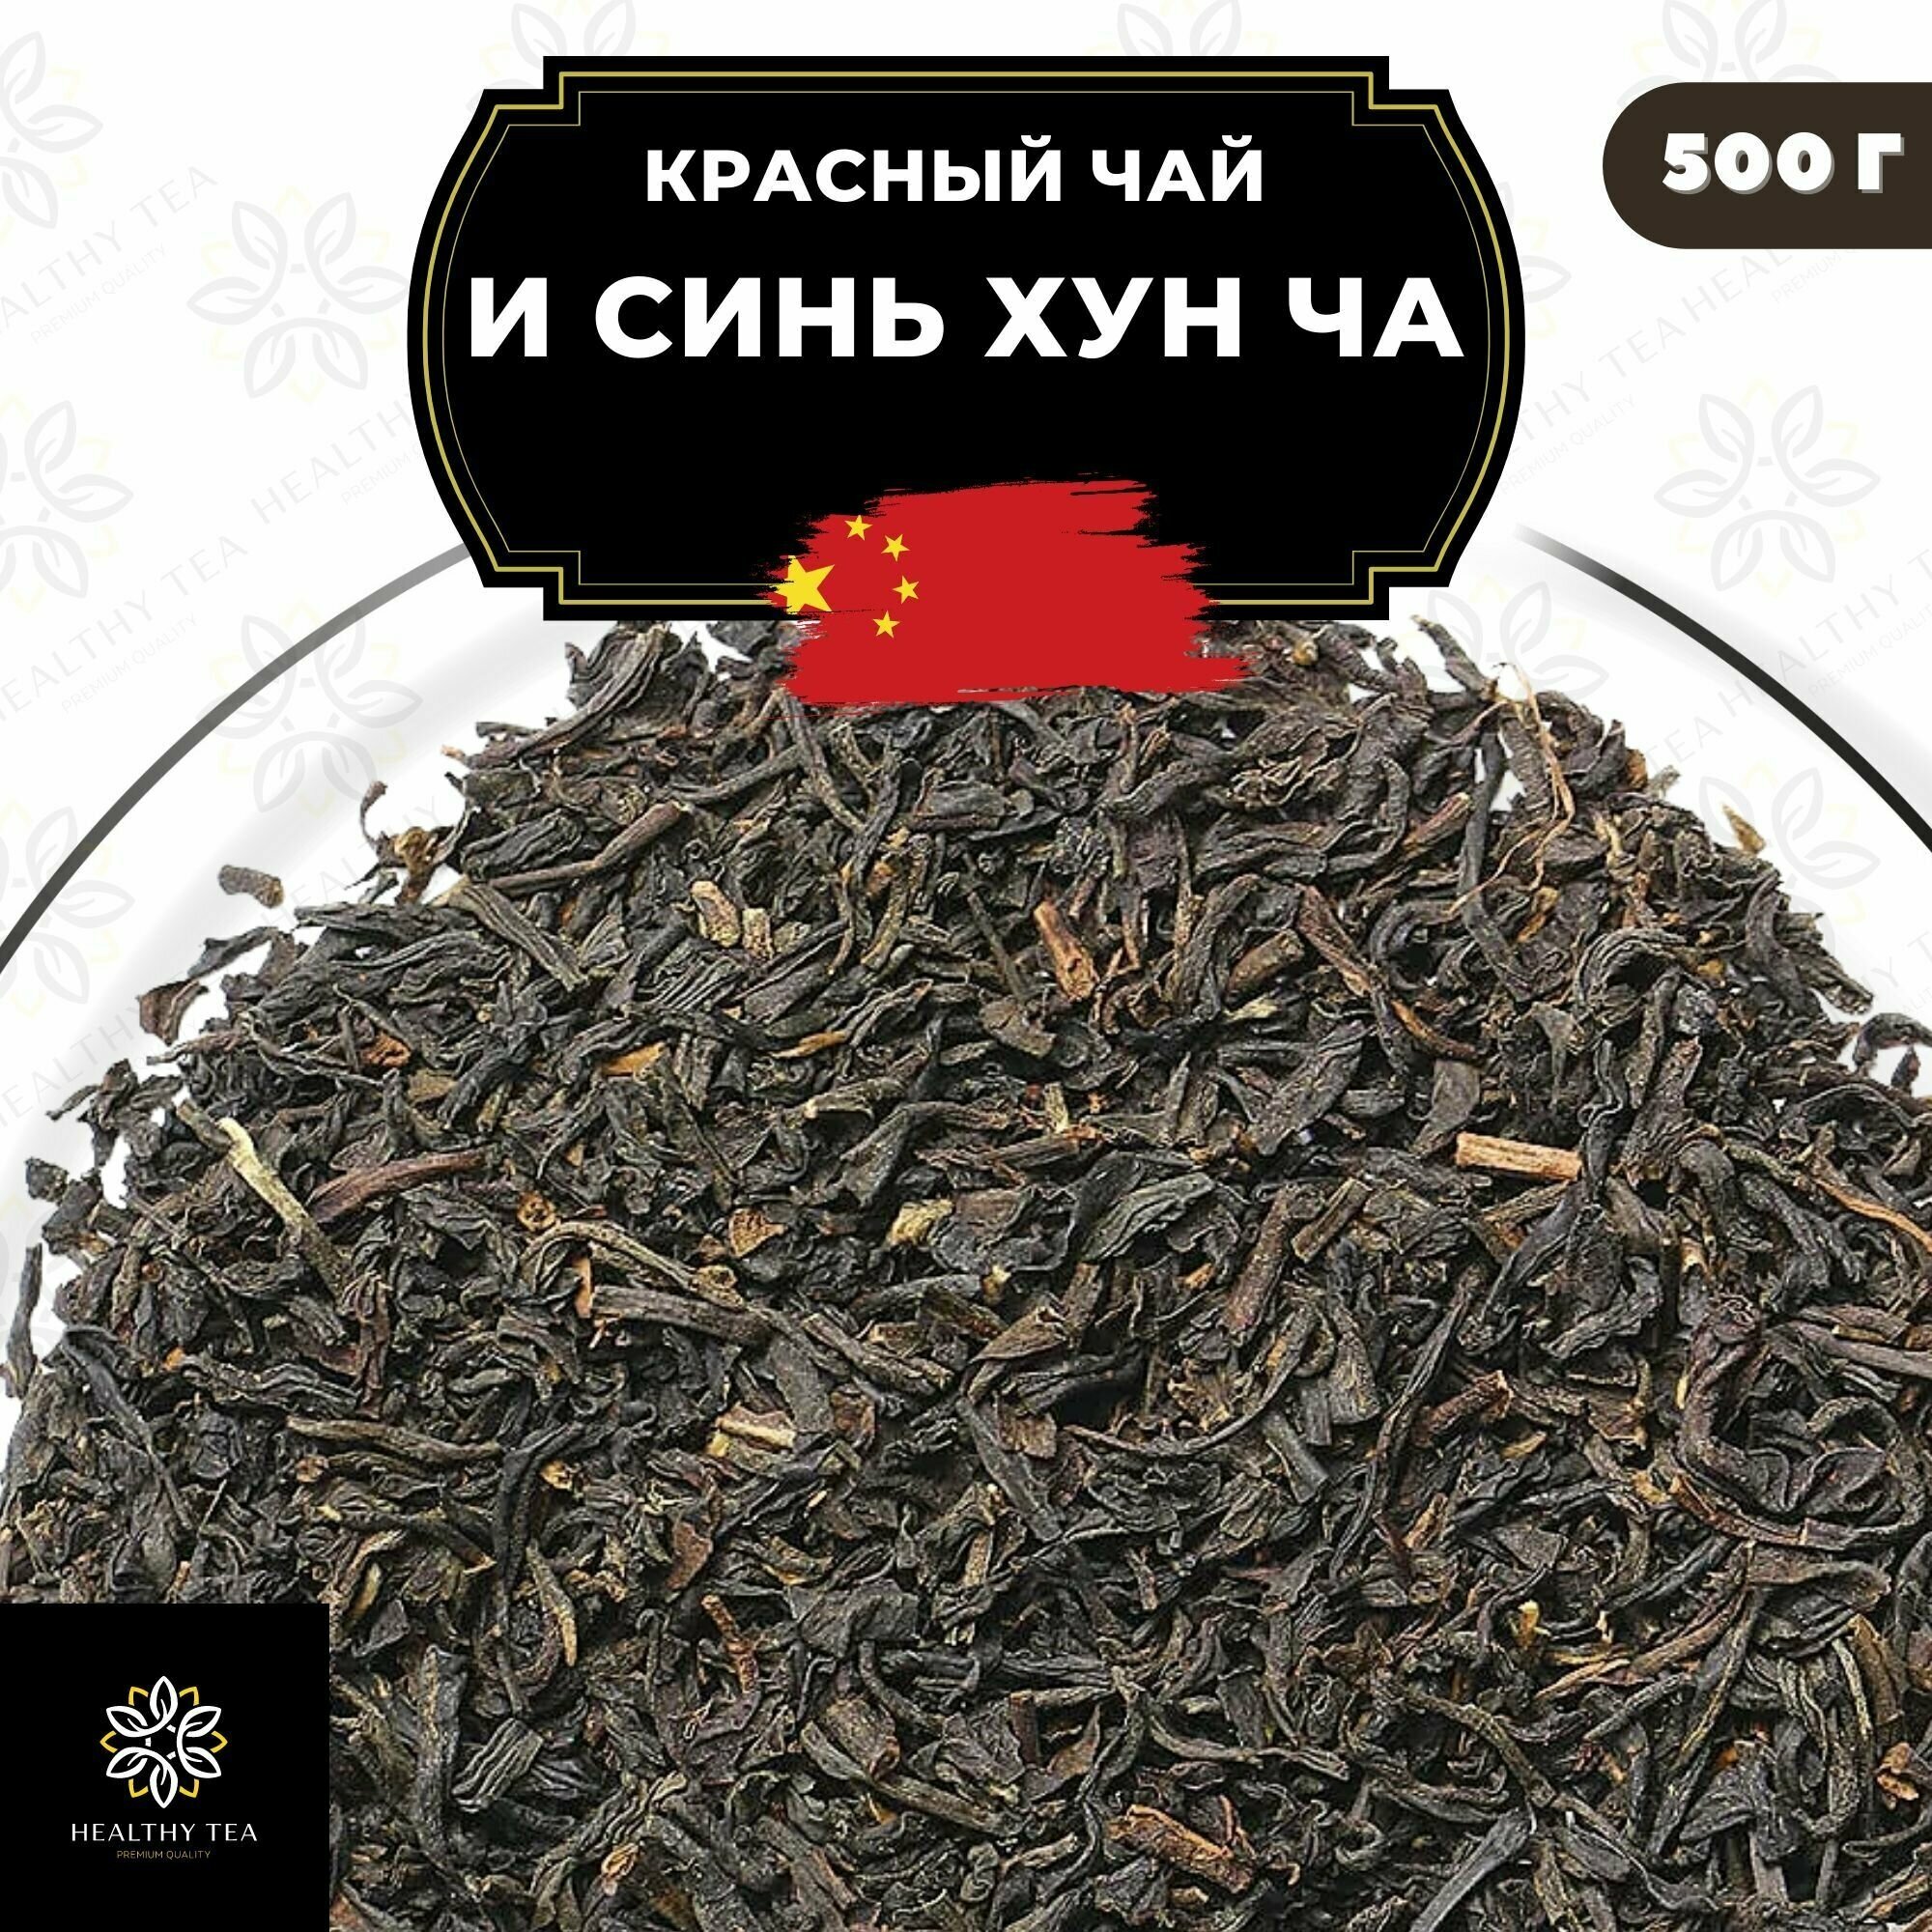 Китайский красный чай И Синь Хун Ча Полезный чай / HEALTHY TEA, 500 г